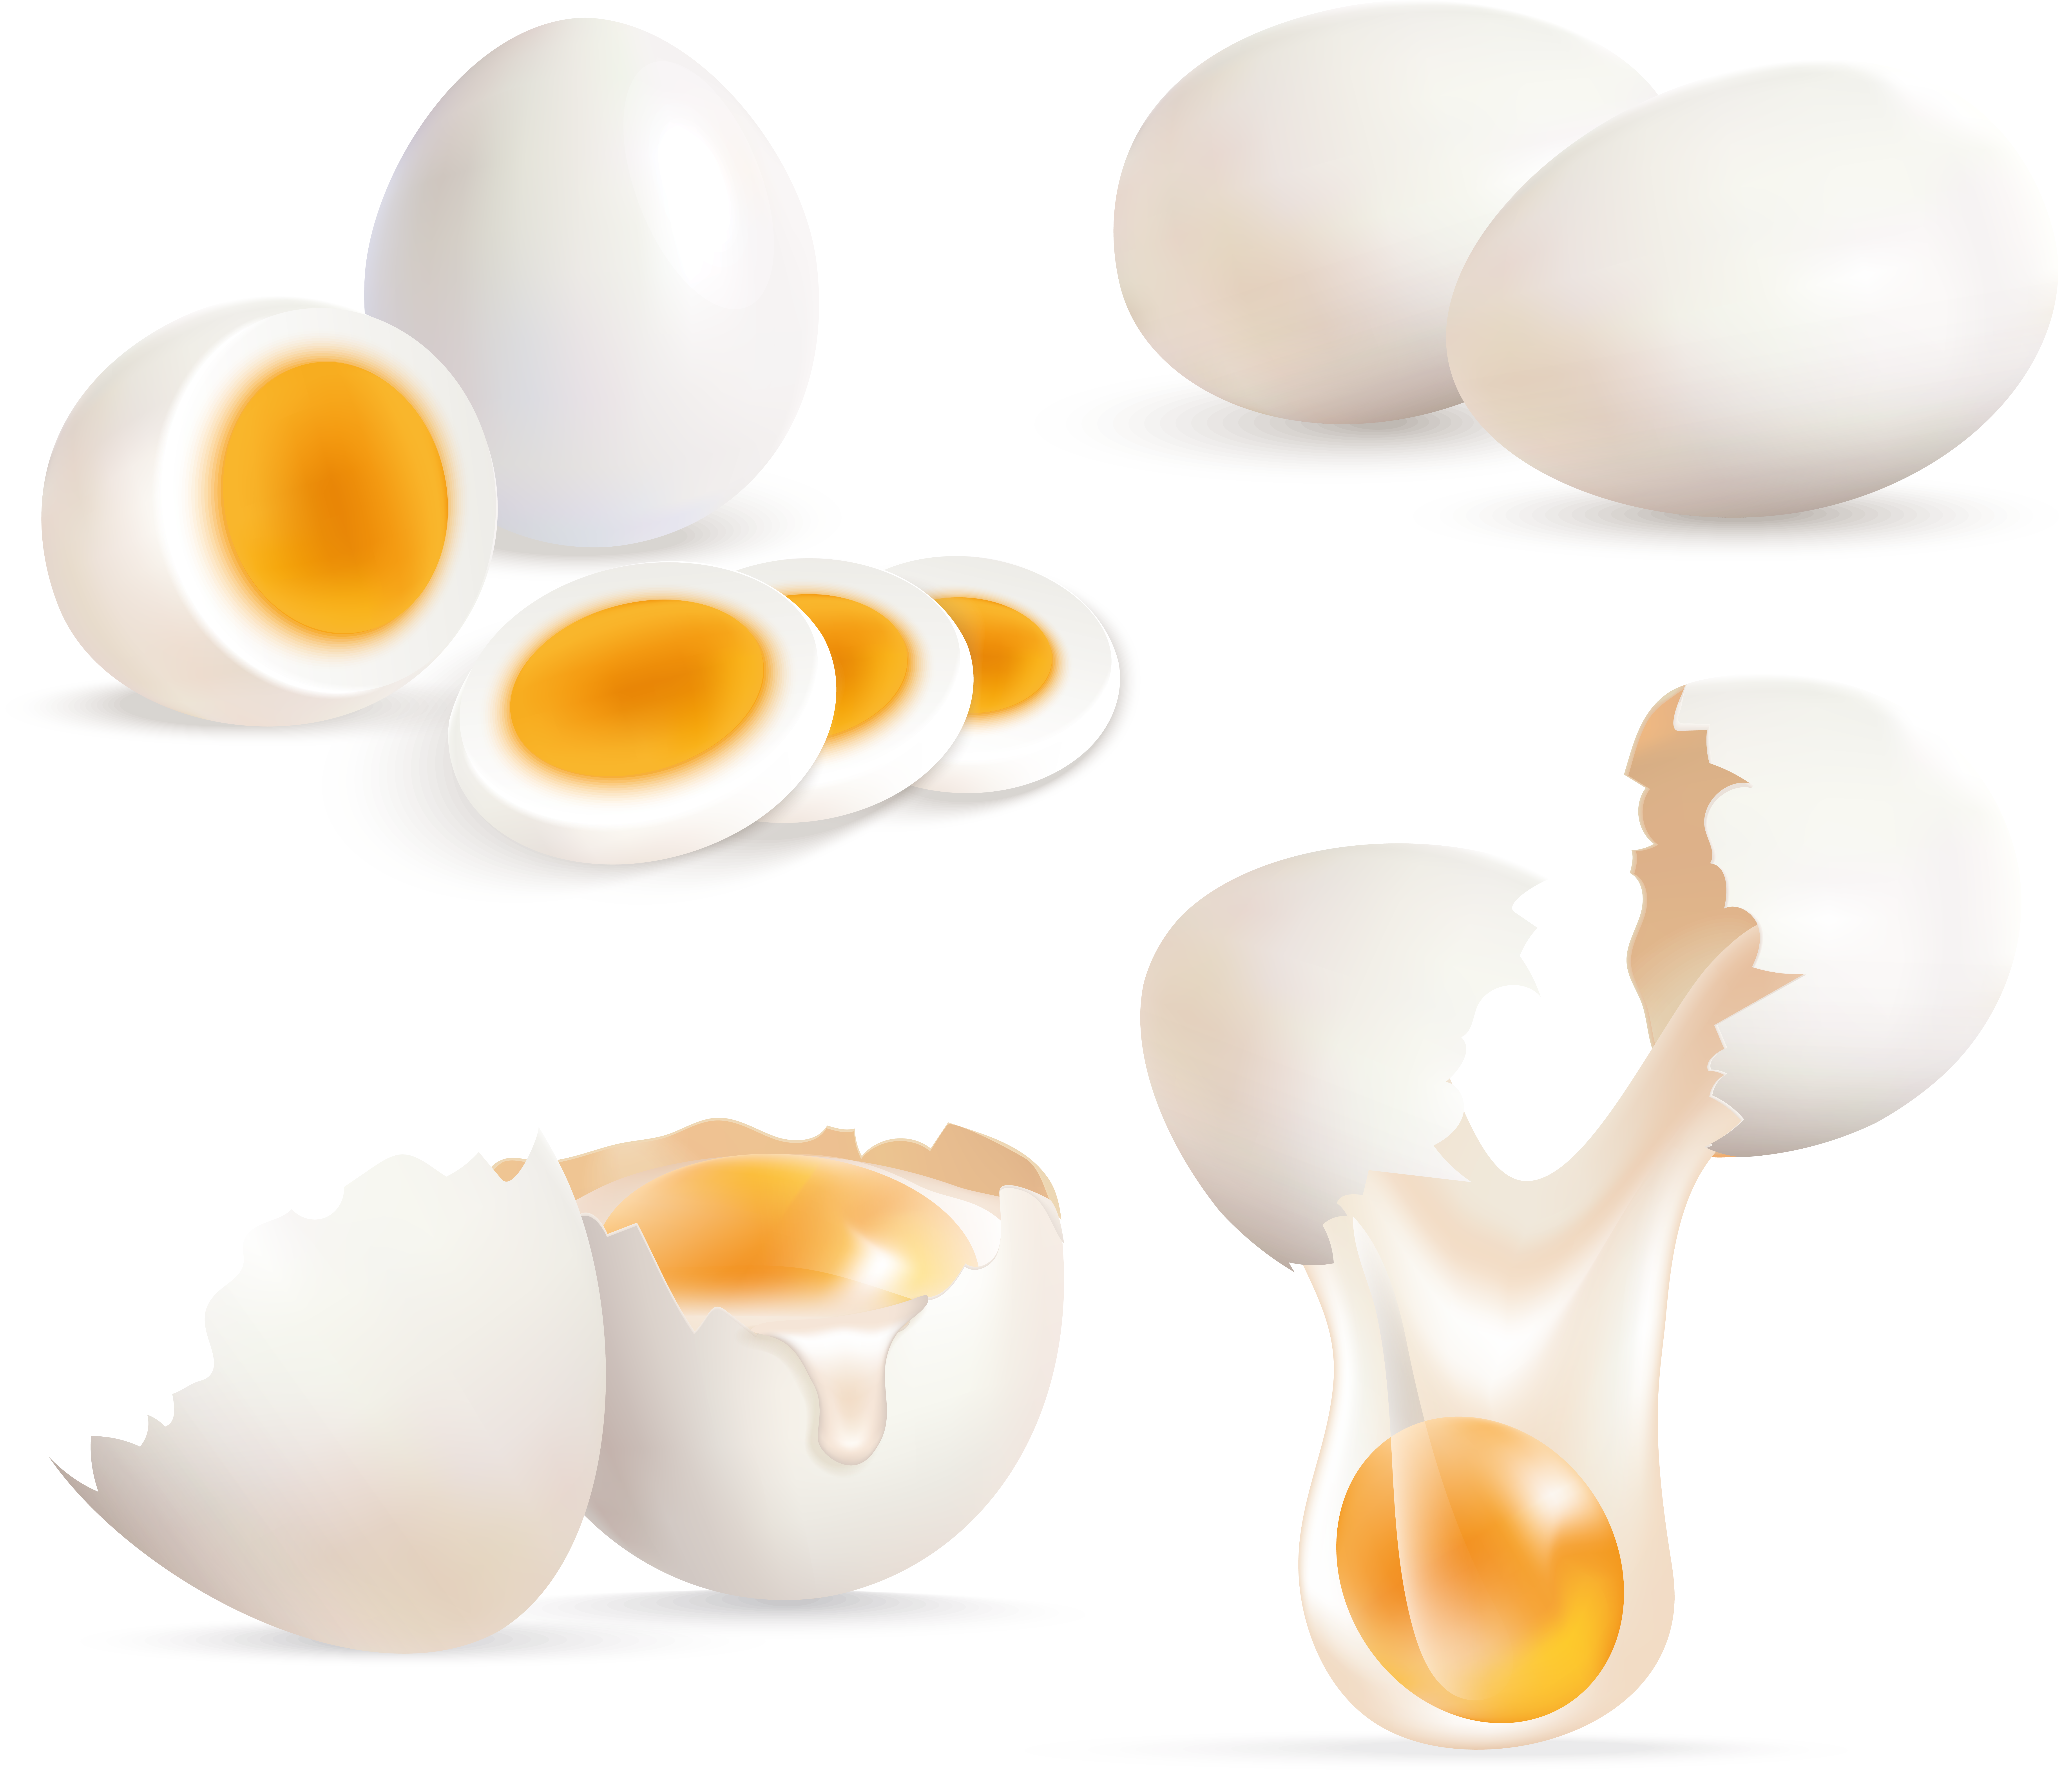 깨진 달걀, 자른 달걀